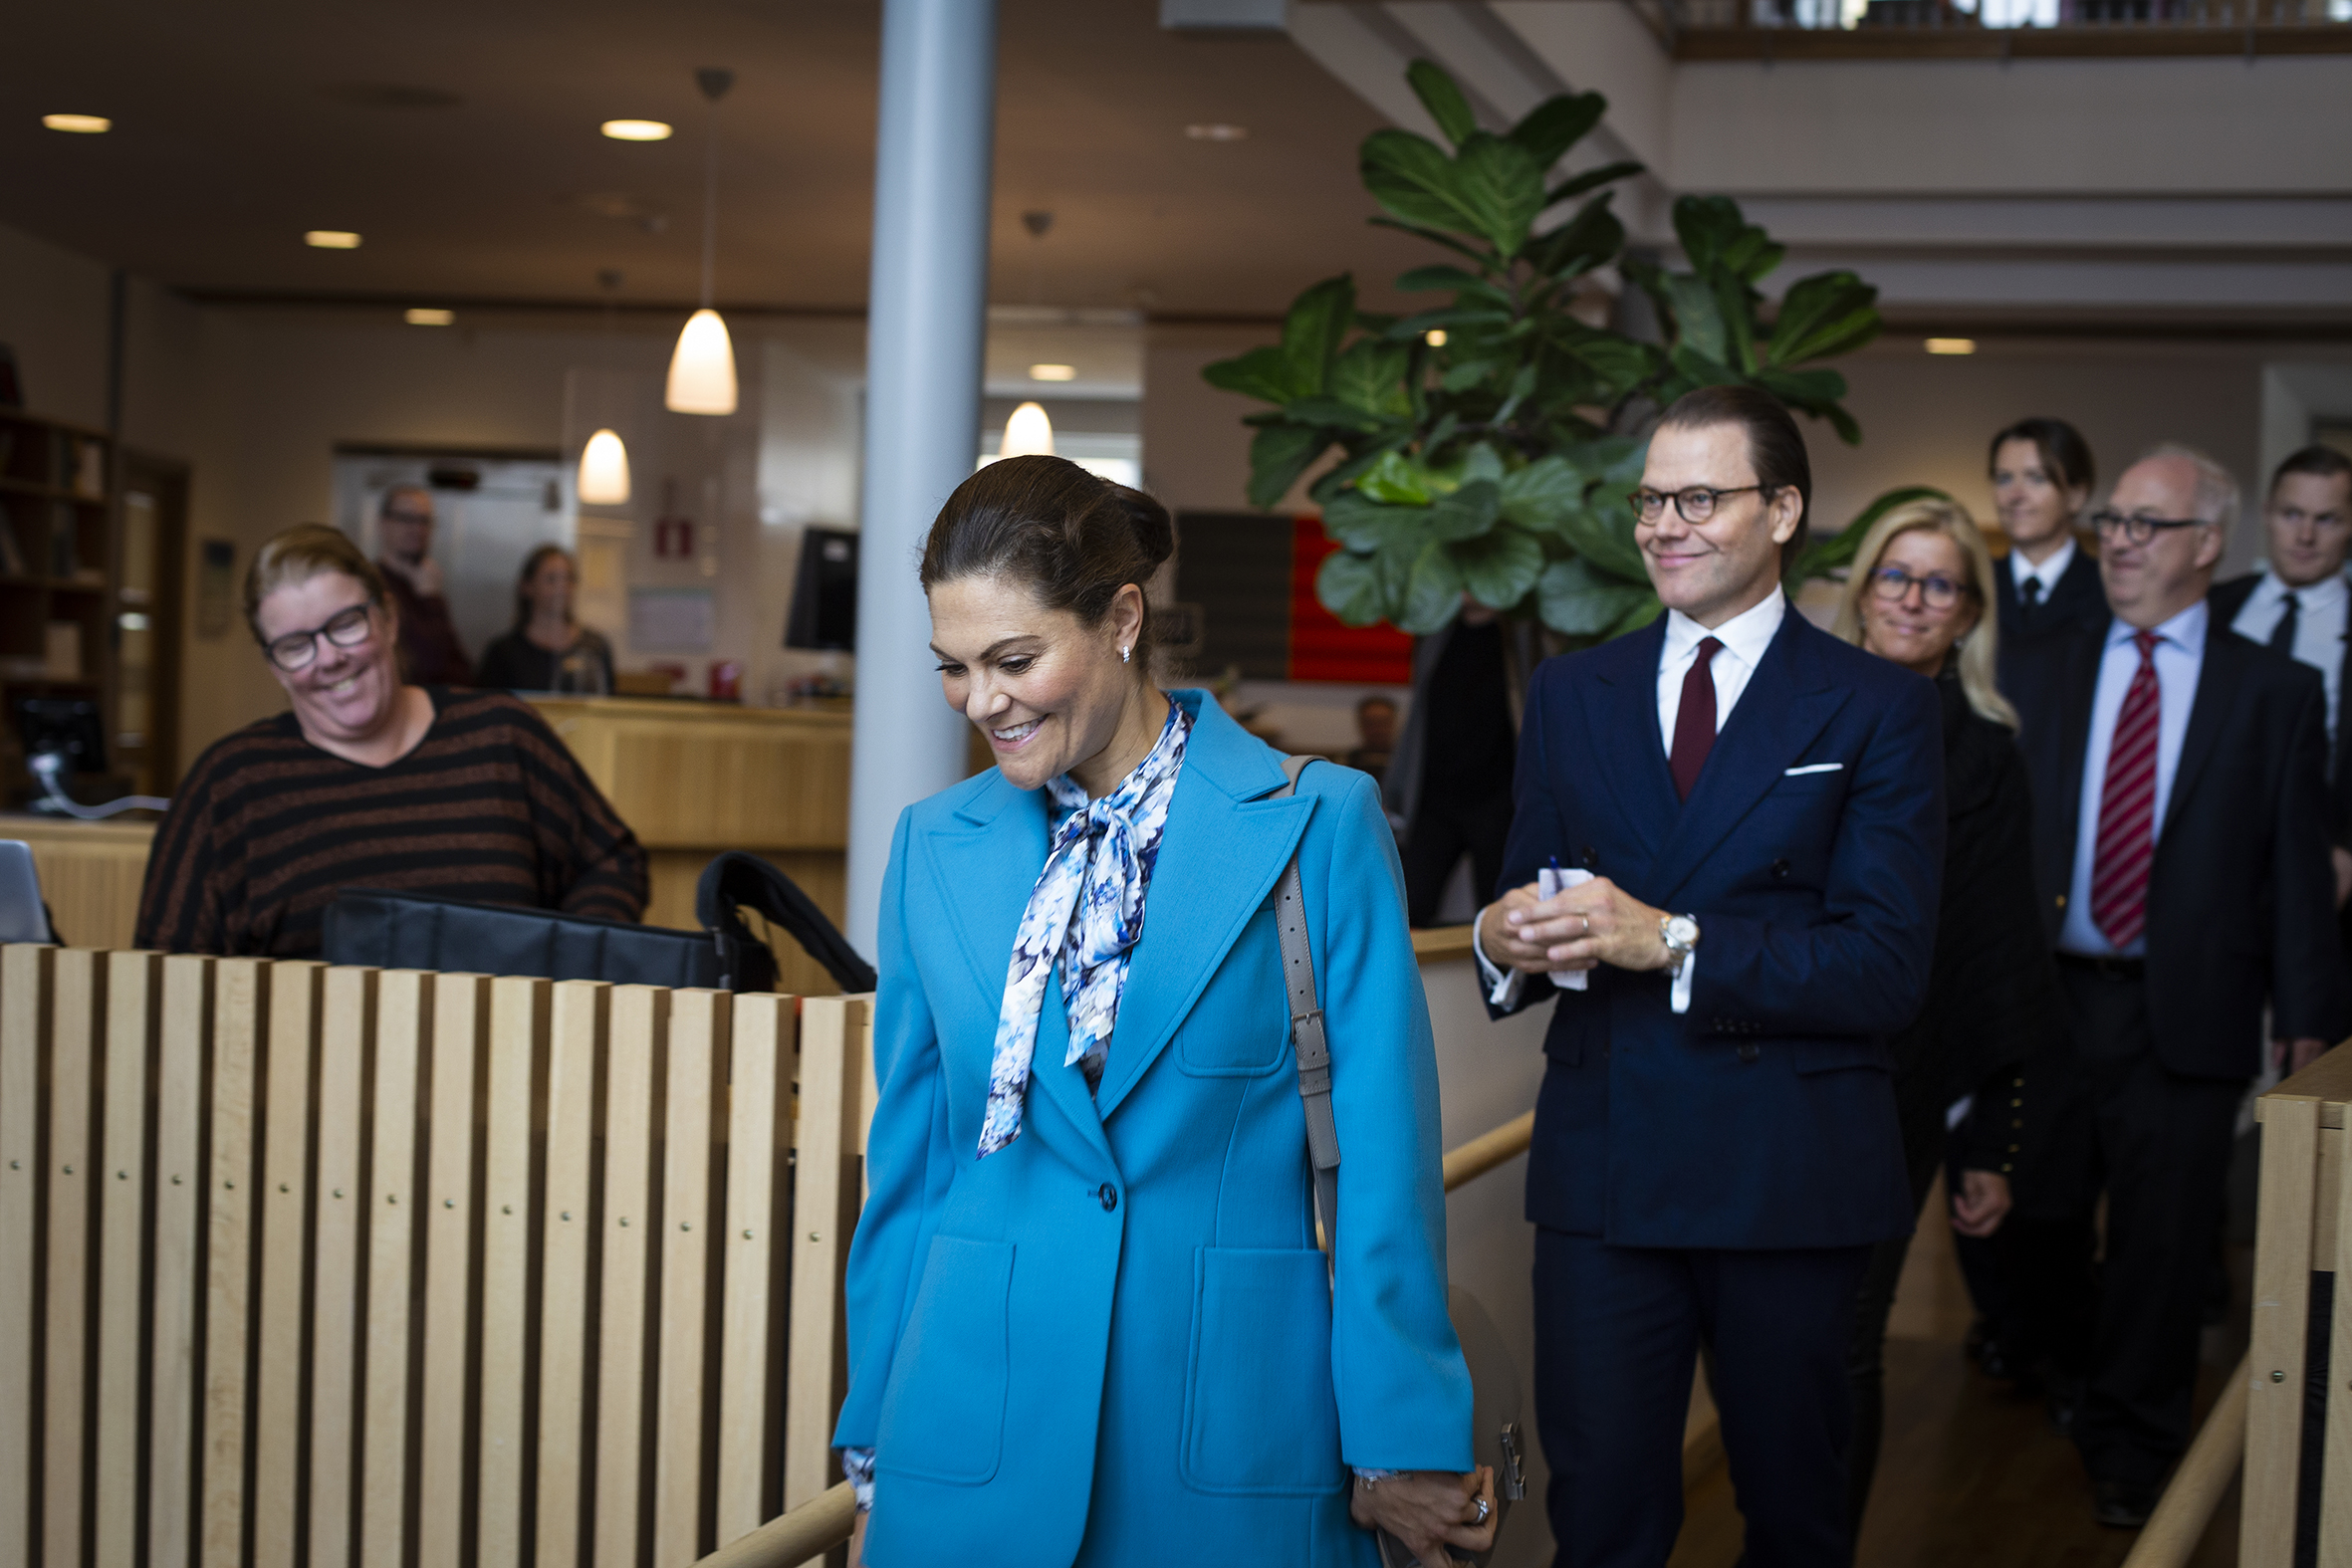 Kronprinsessan Victoria och Prins Daniel anländer till Högskolan med landshövding Per Bill. Foto: Anna Sällberg